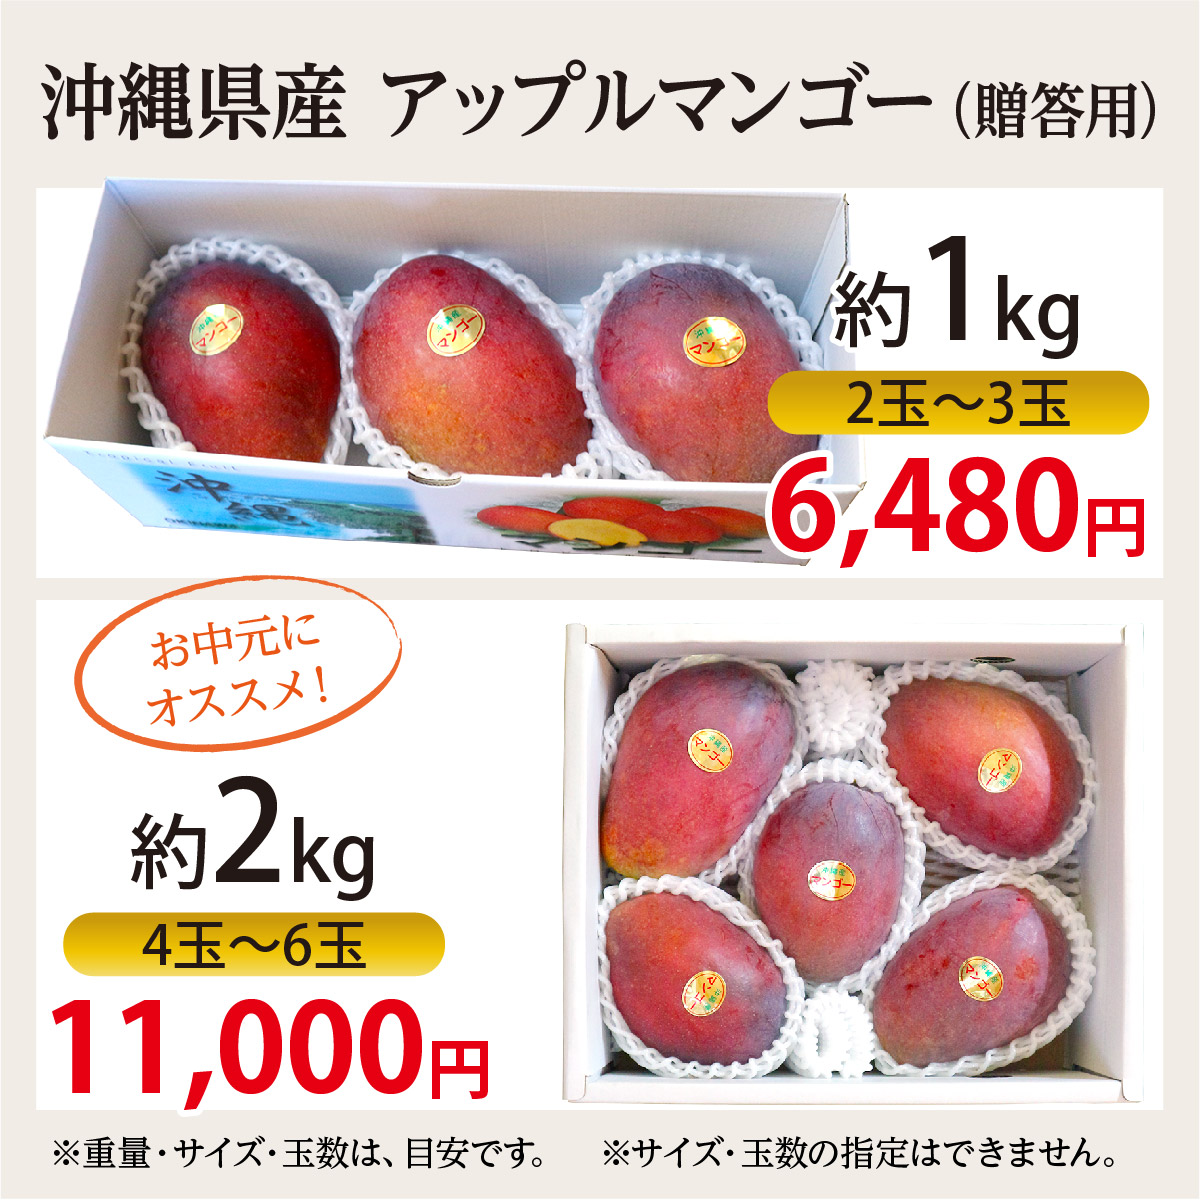 沖縄産☆贈答用金煌マンゴー6玉(2kg) - 果物